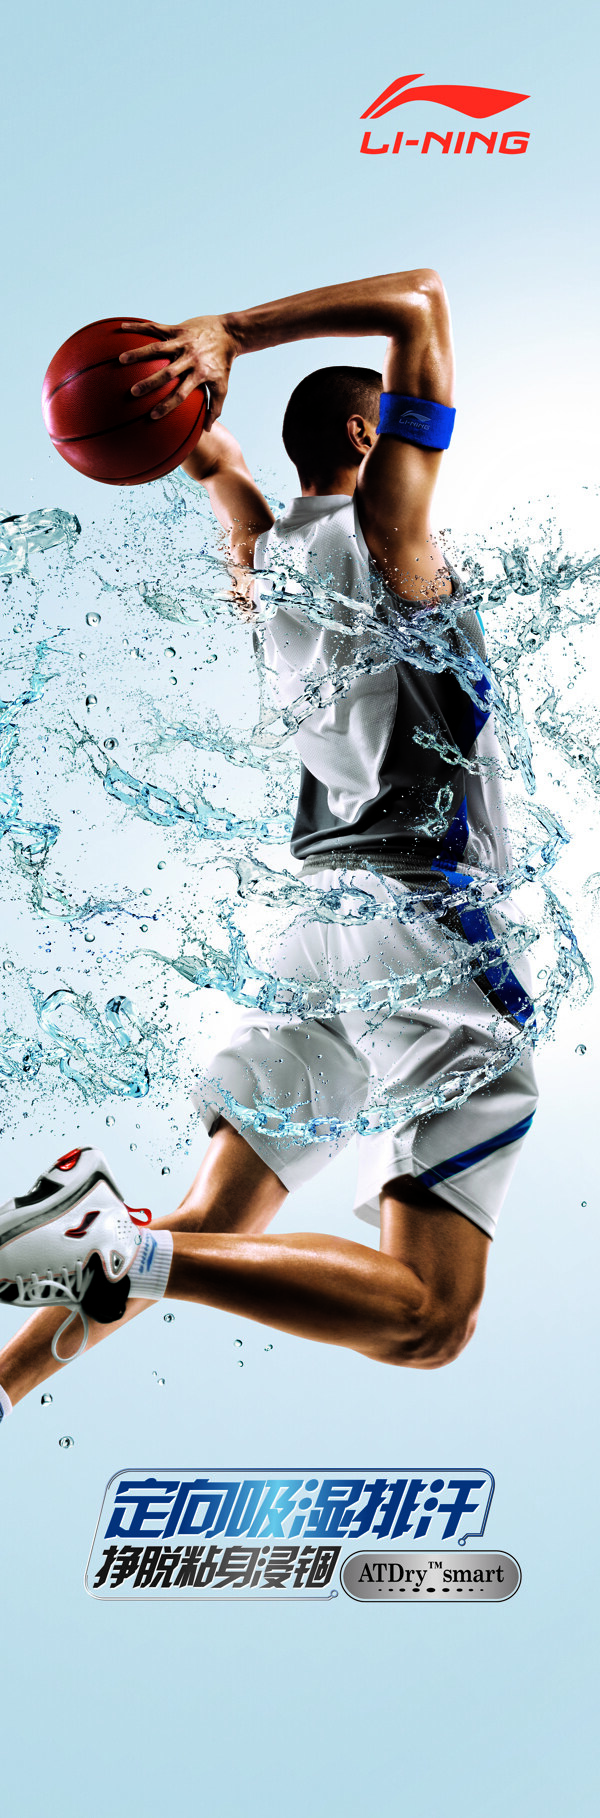 李宁2010年logo形象画背景墙李宁运动装运动时尚黑人灌篮水花图片